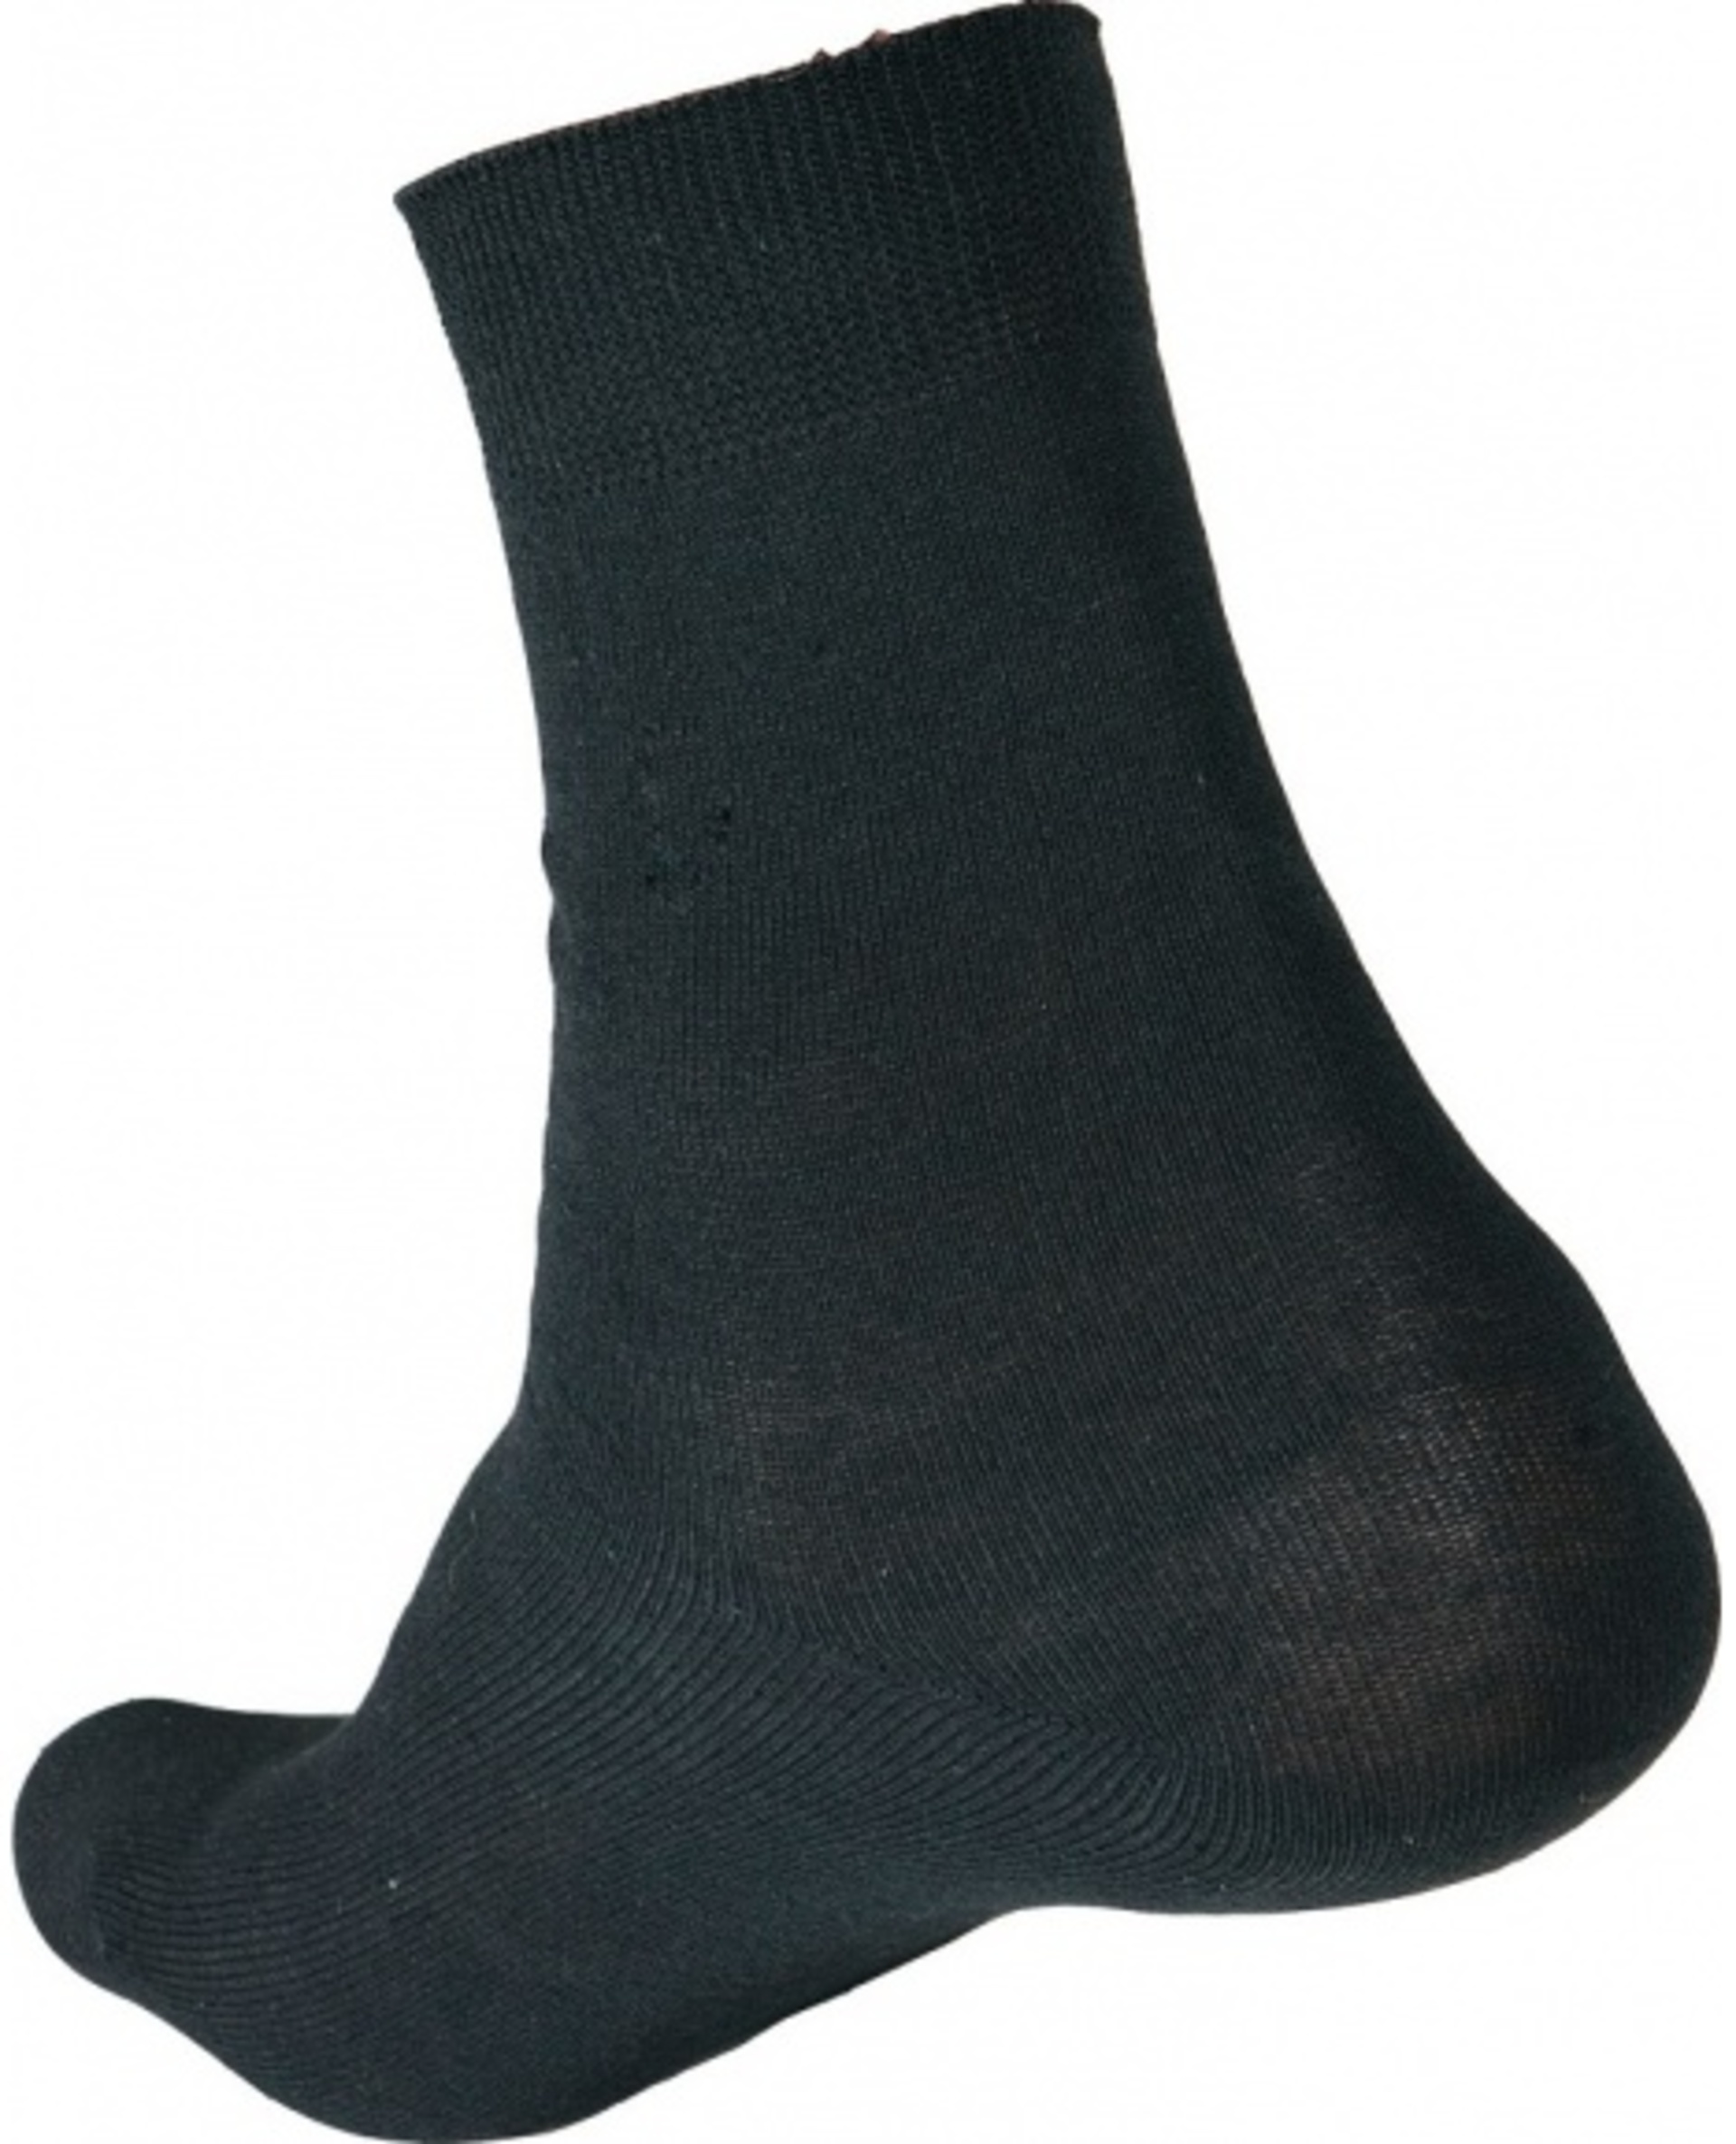 Ponožky CRV MERGE 42